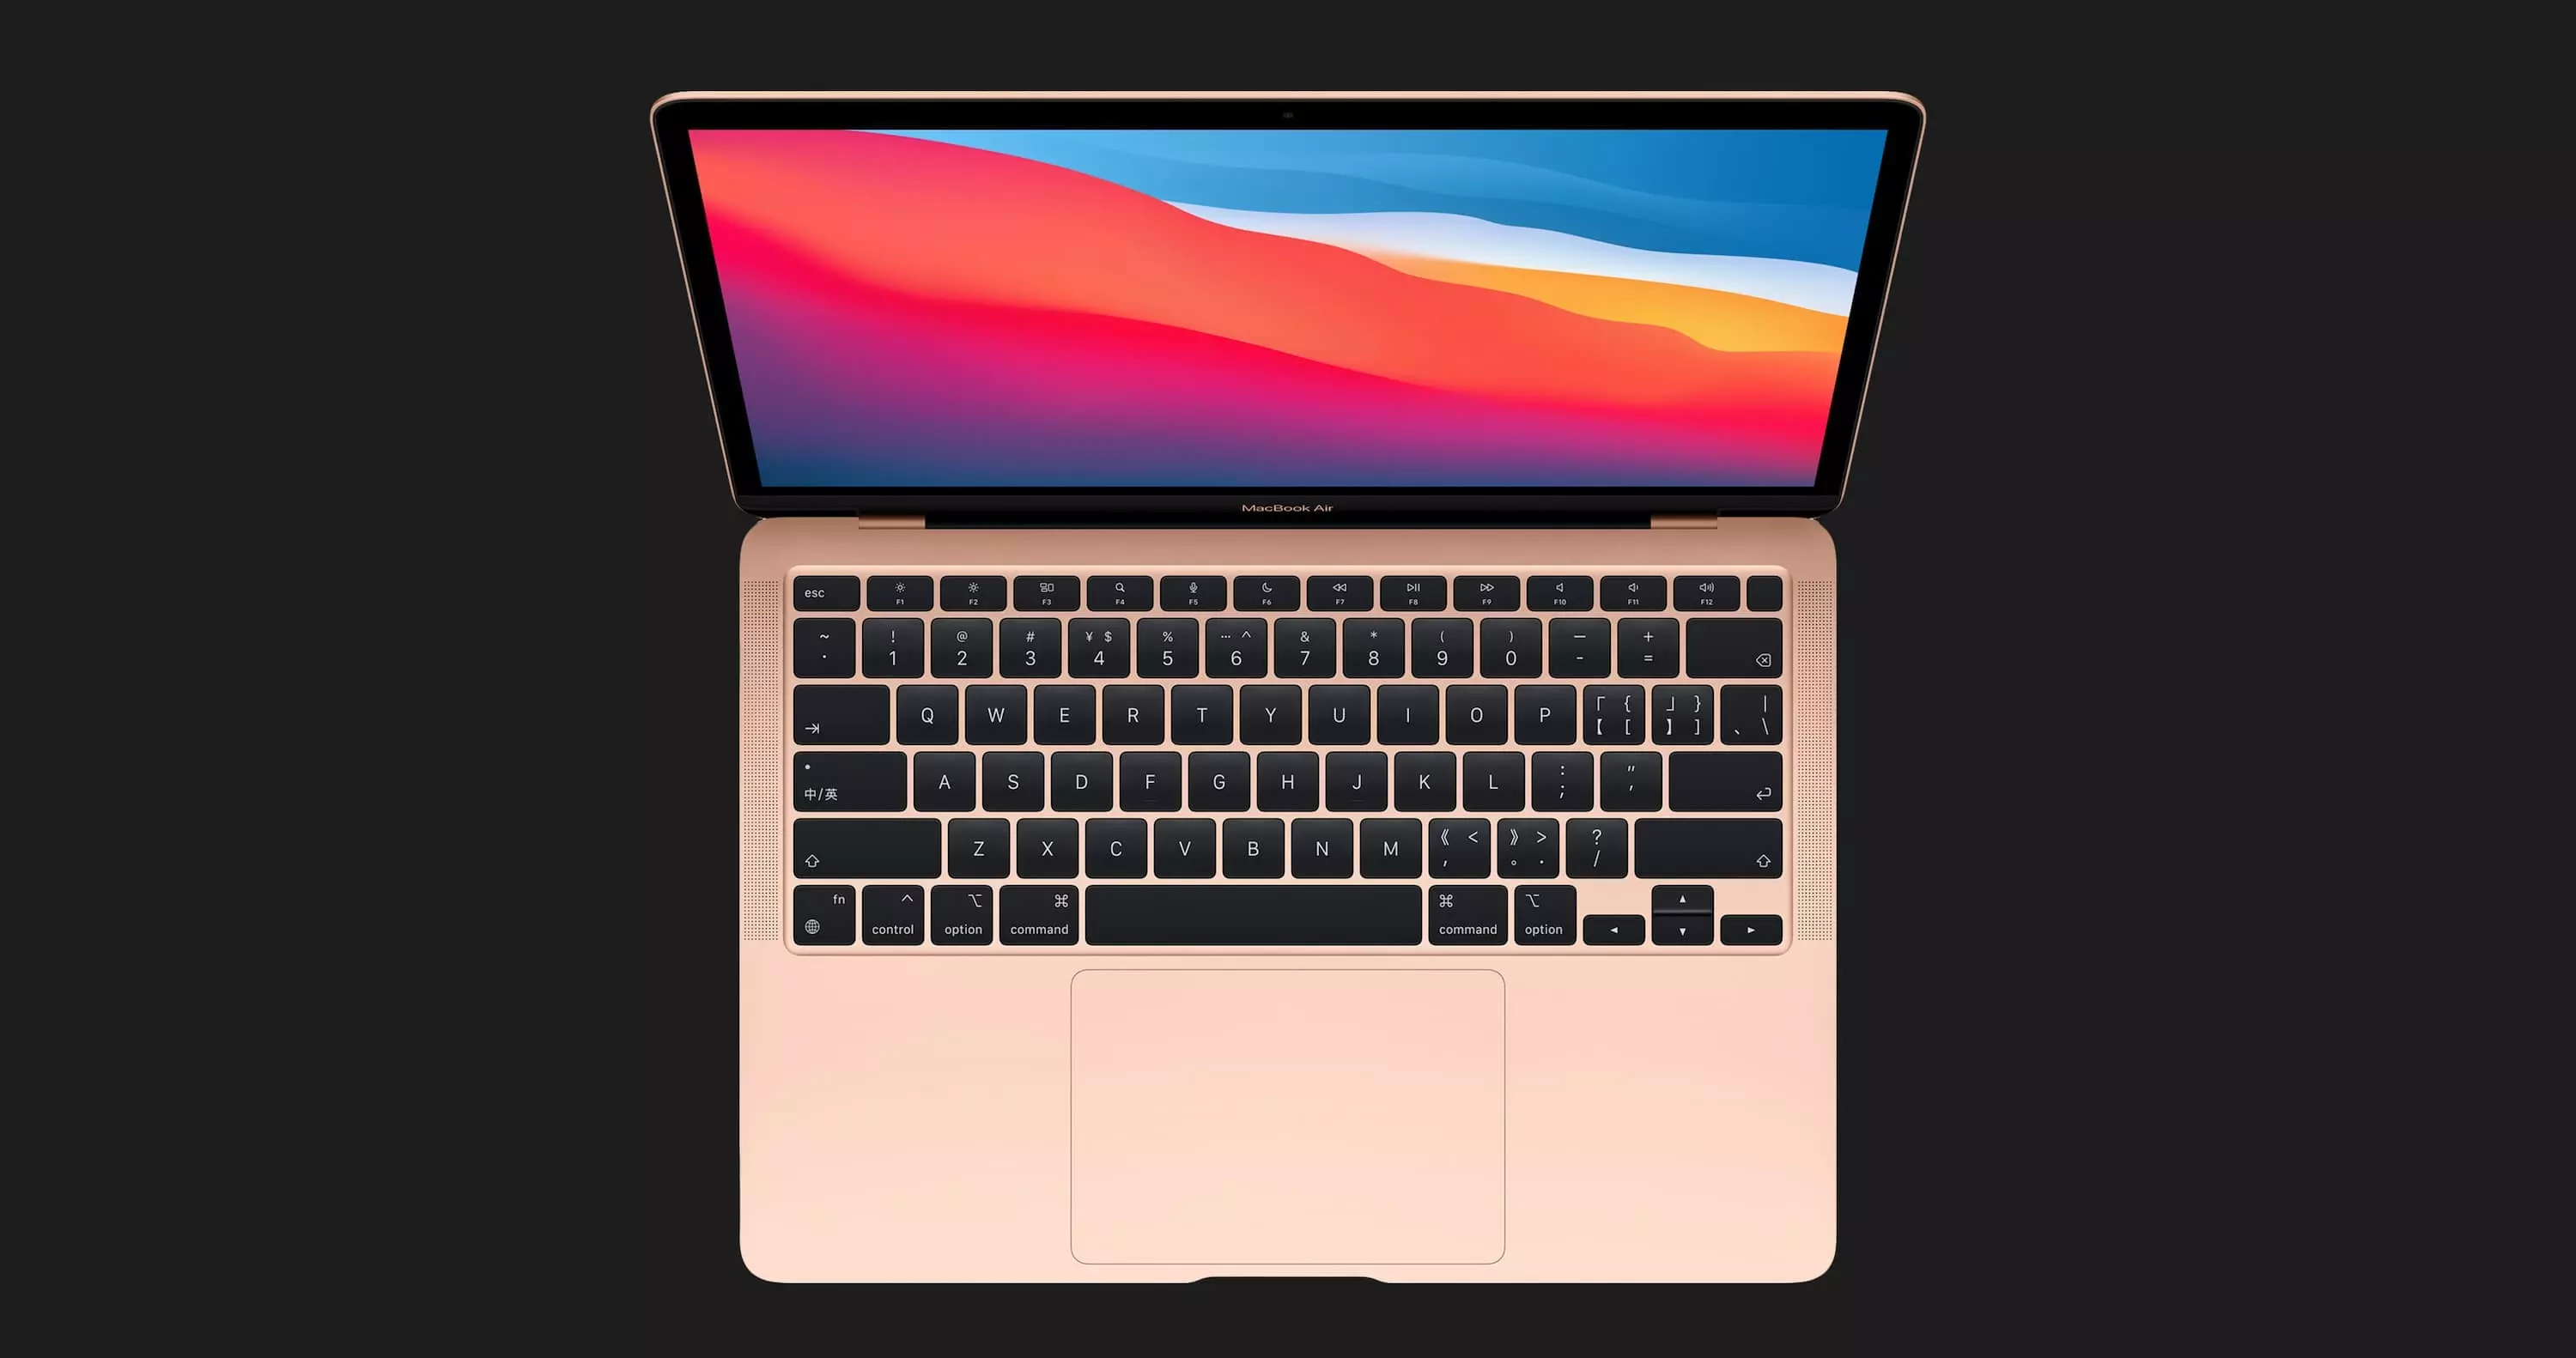 б/у Apple MacBook Air 13, 2019, Silver (256GB) (MVFL2) (Ідеальний стан)